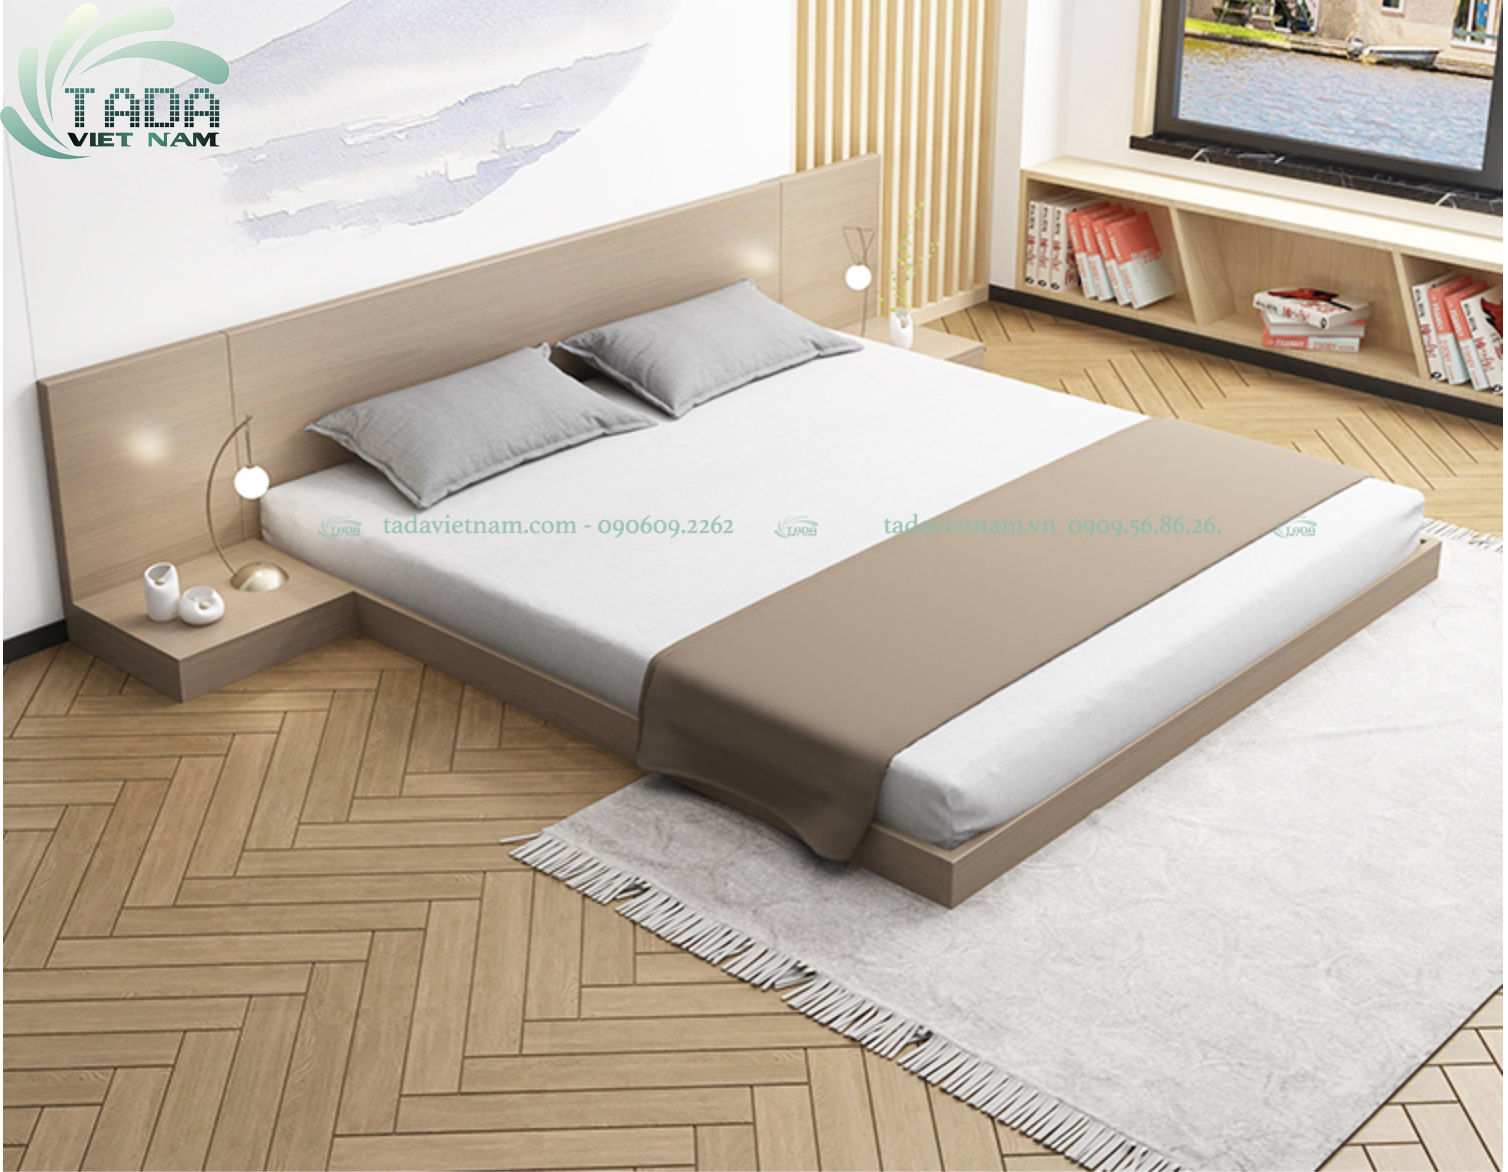 Giường ngủ Nhật Tatami bệt thương hiệu TADA VIETNAM- TD3179